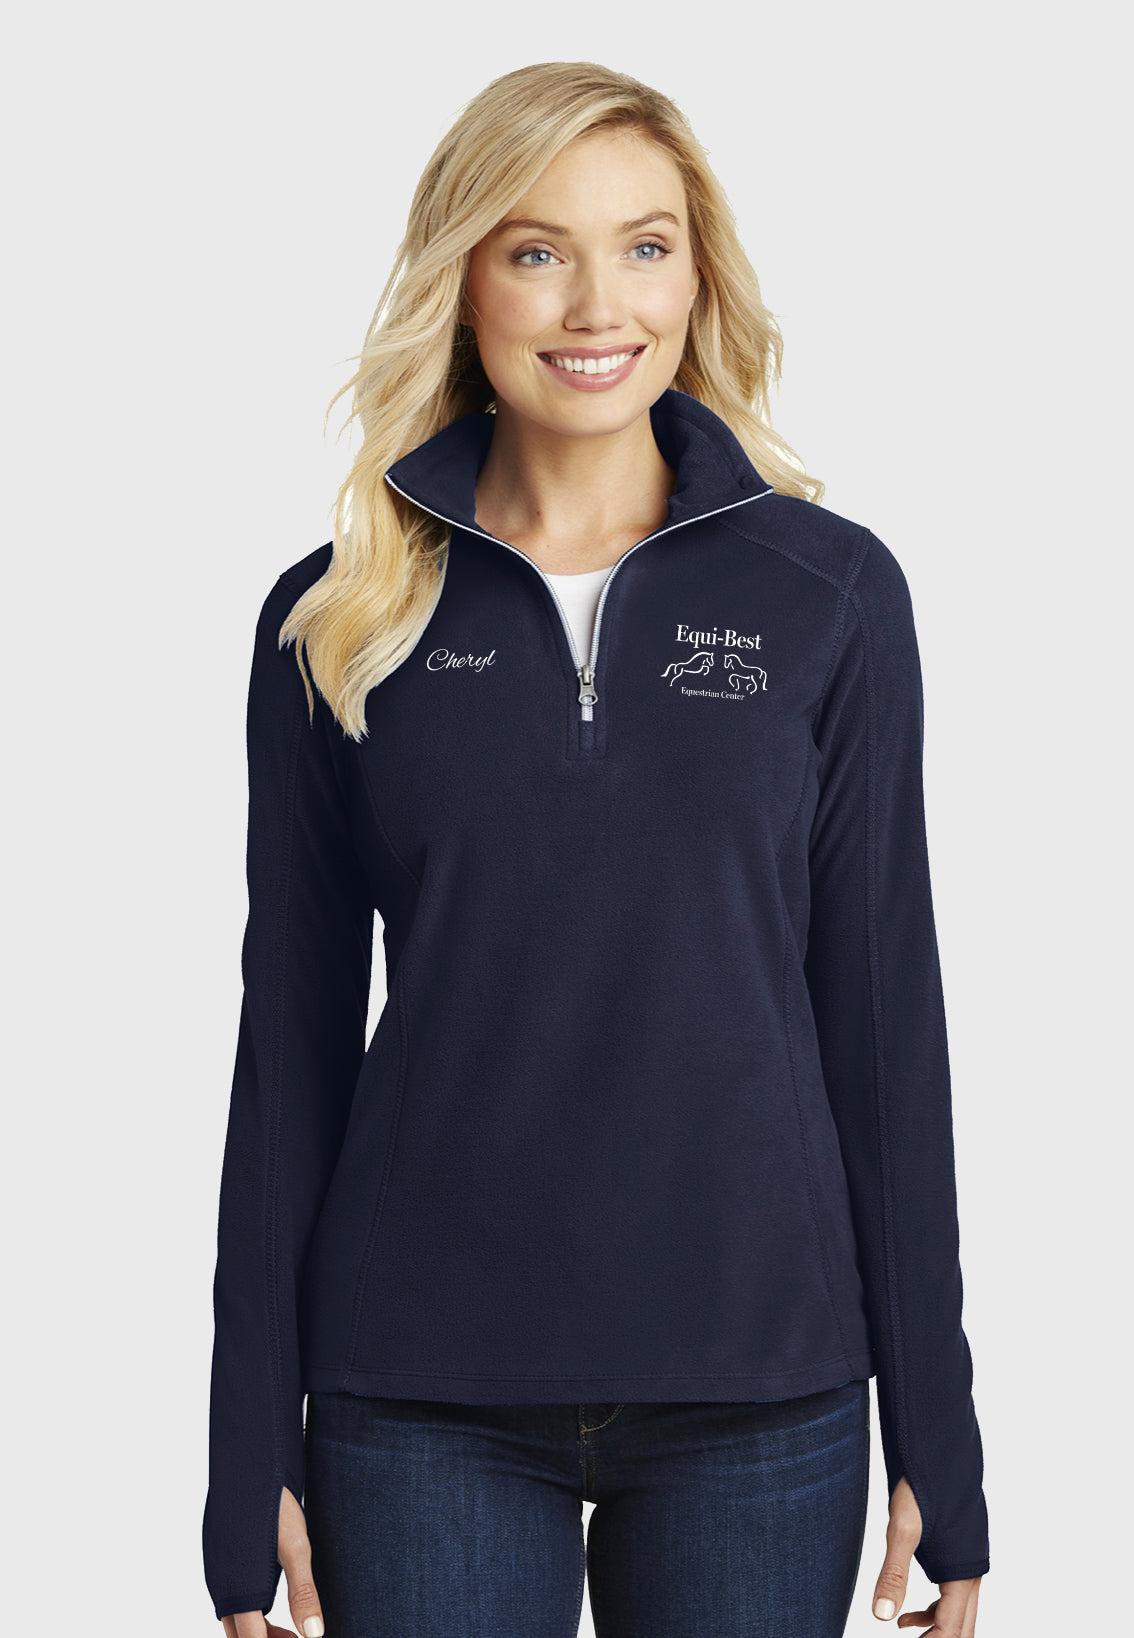 Equi-Best Port Authority® Ladies + Mens Microfleece 1/2 Zip Pullovers - Navy